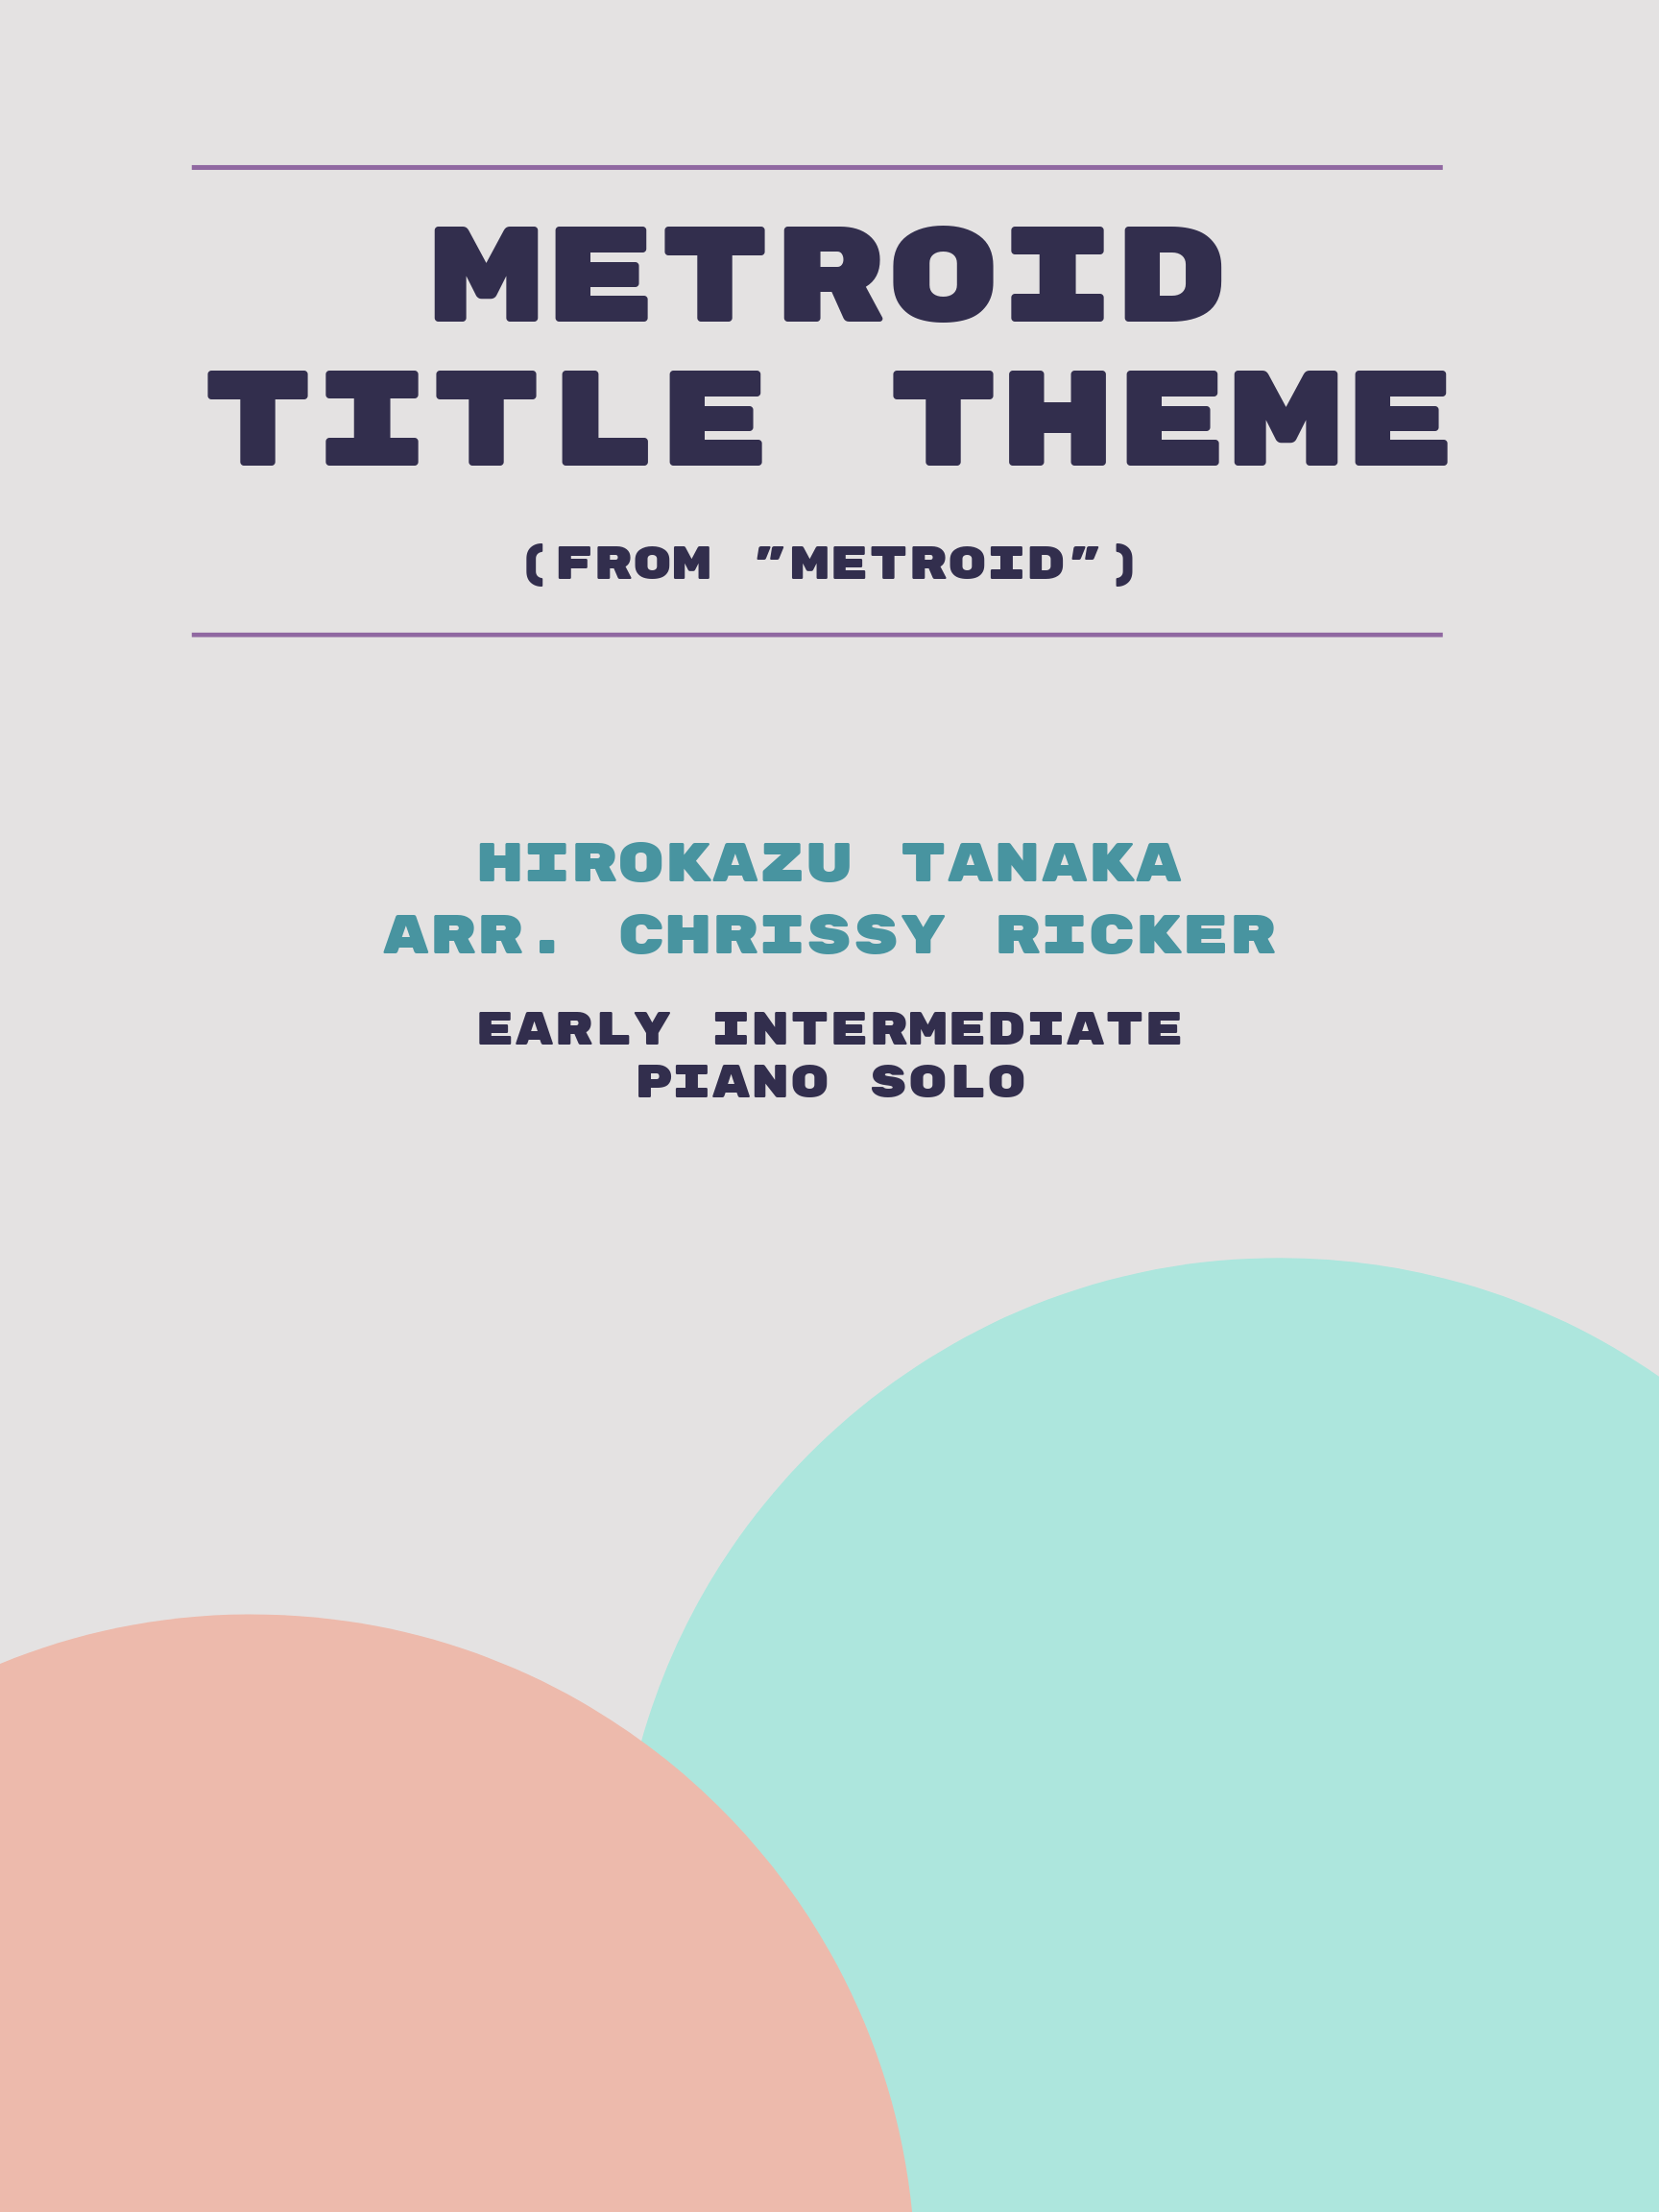 Metroid Title Theme by Hirokazu Tanaka